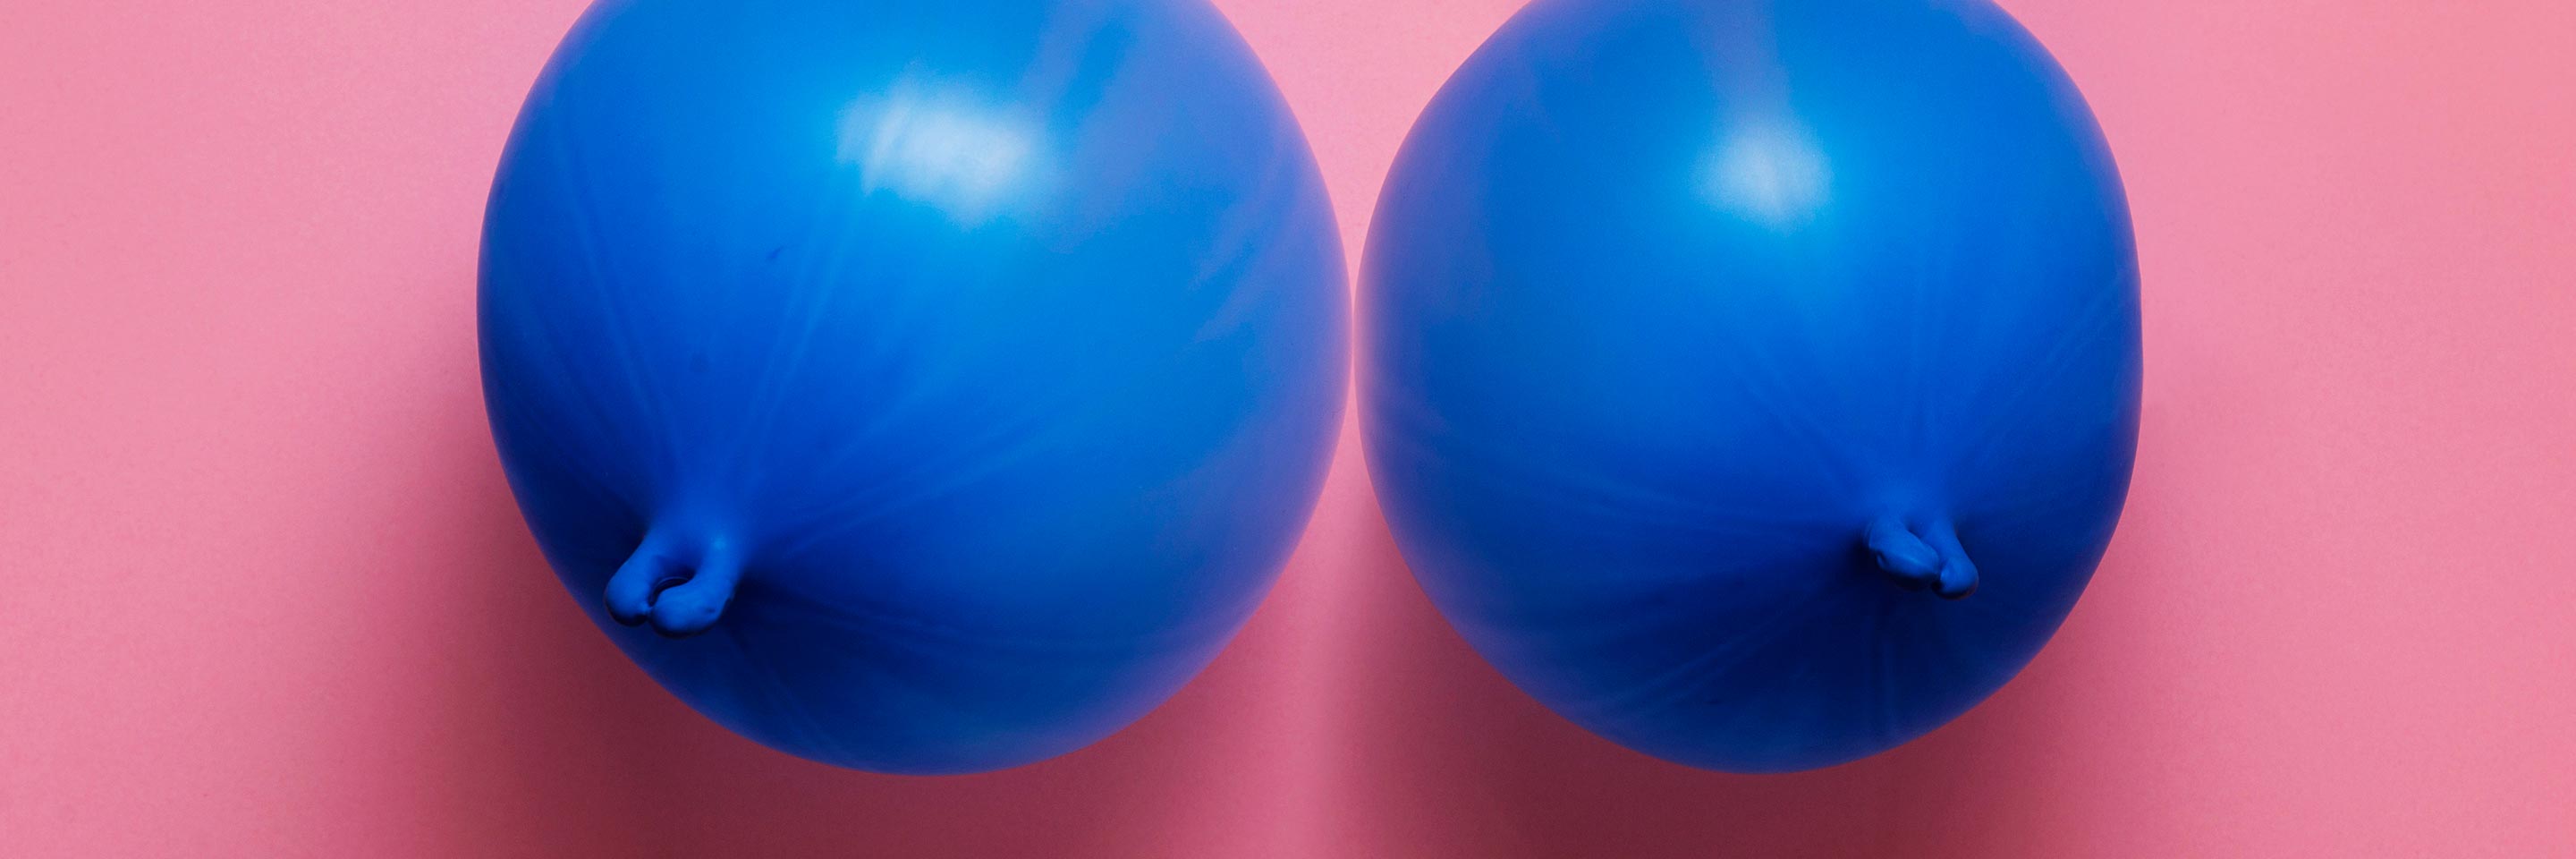 Как связаны секс и рост груди?